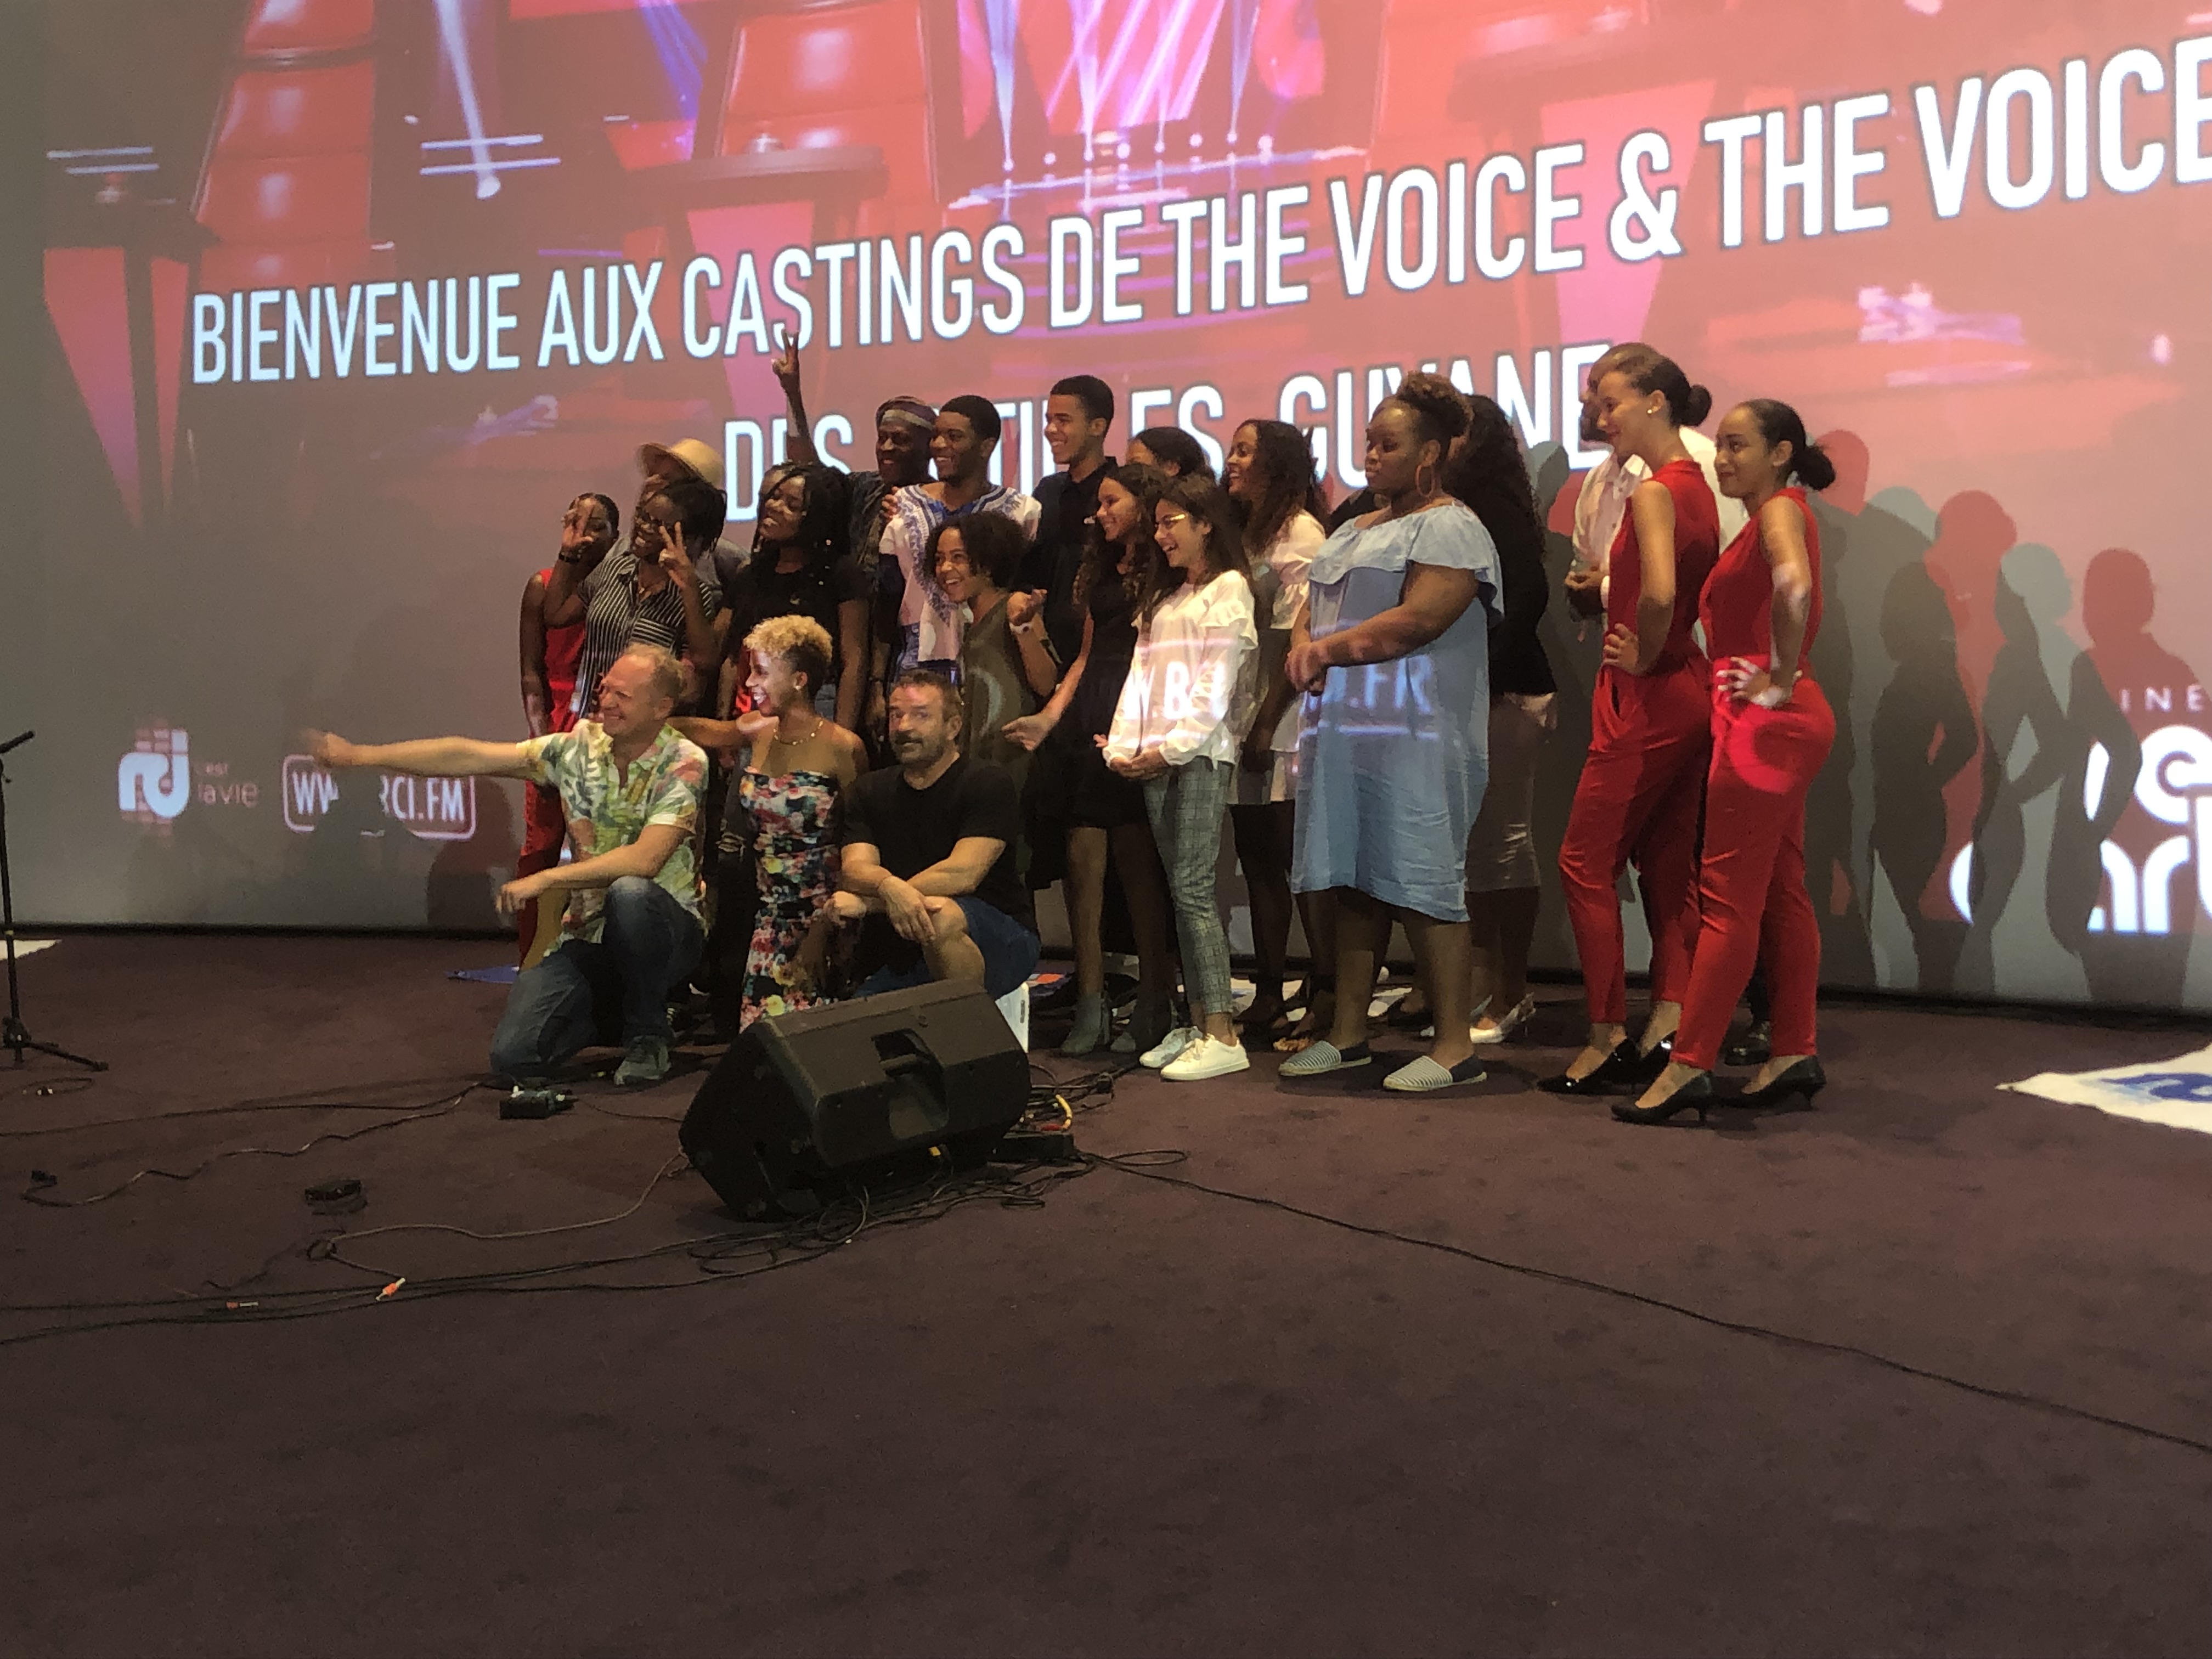     Bruno Berberes présent pour le dernier casting de The Voice Guadeloupe

